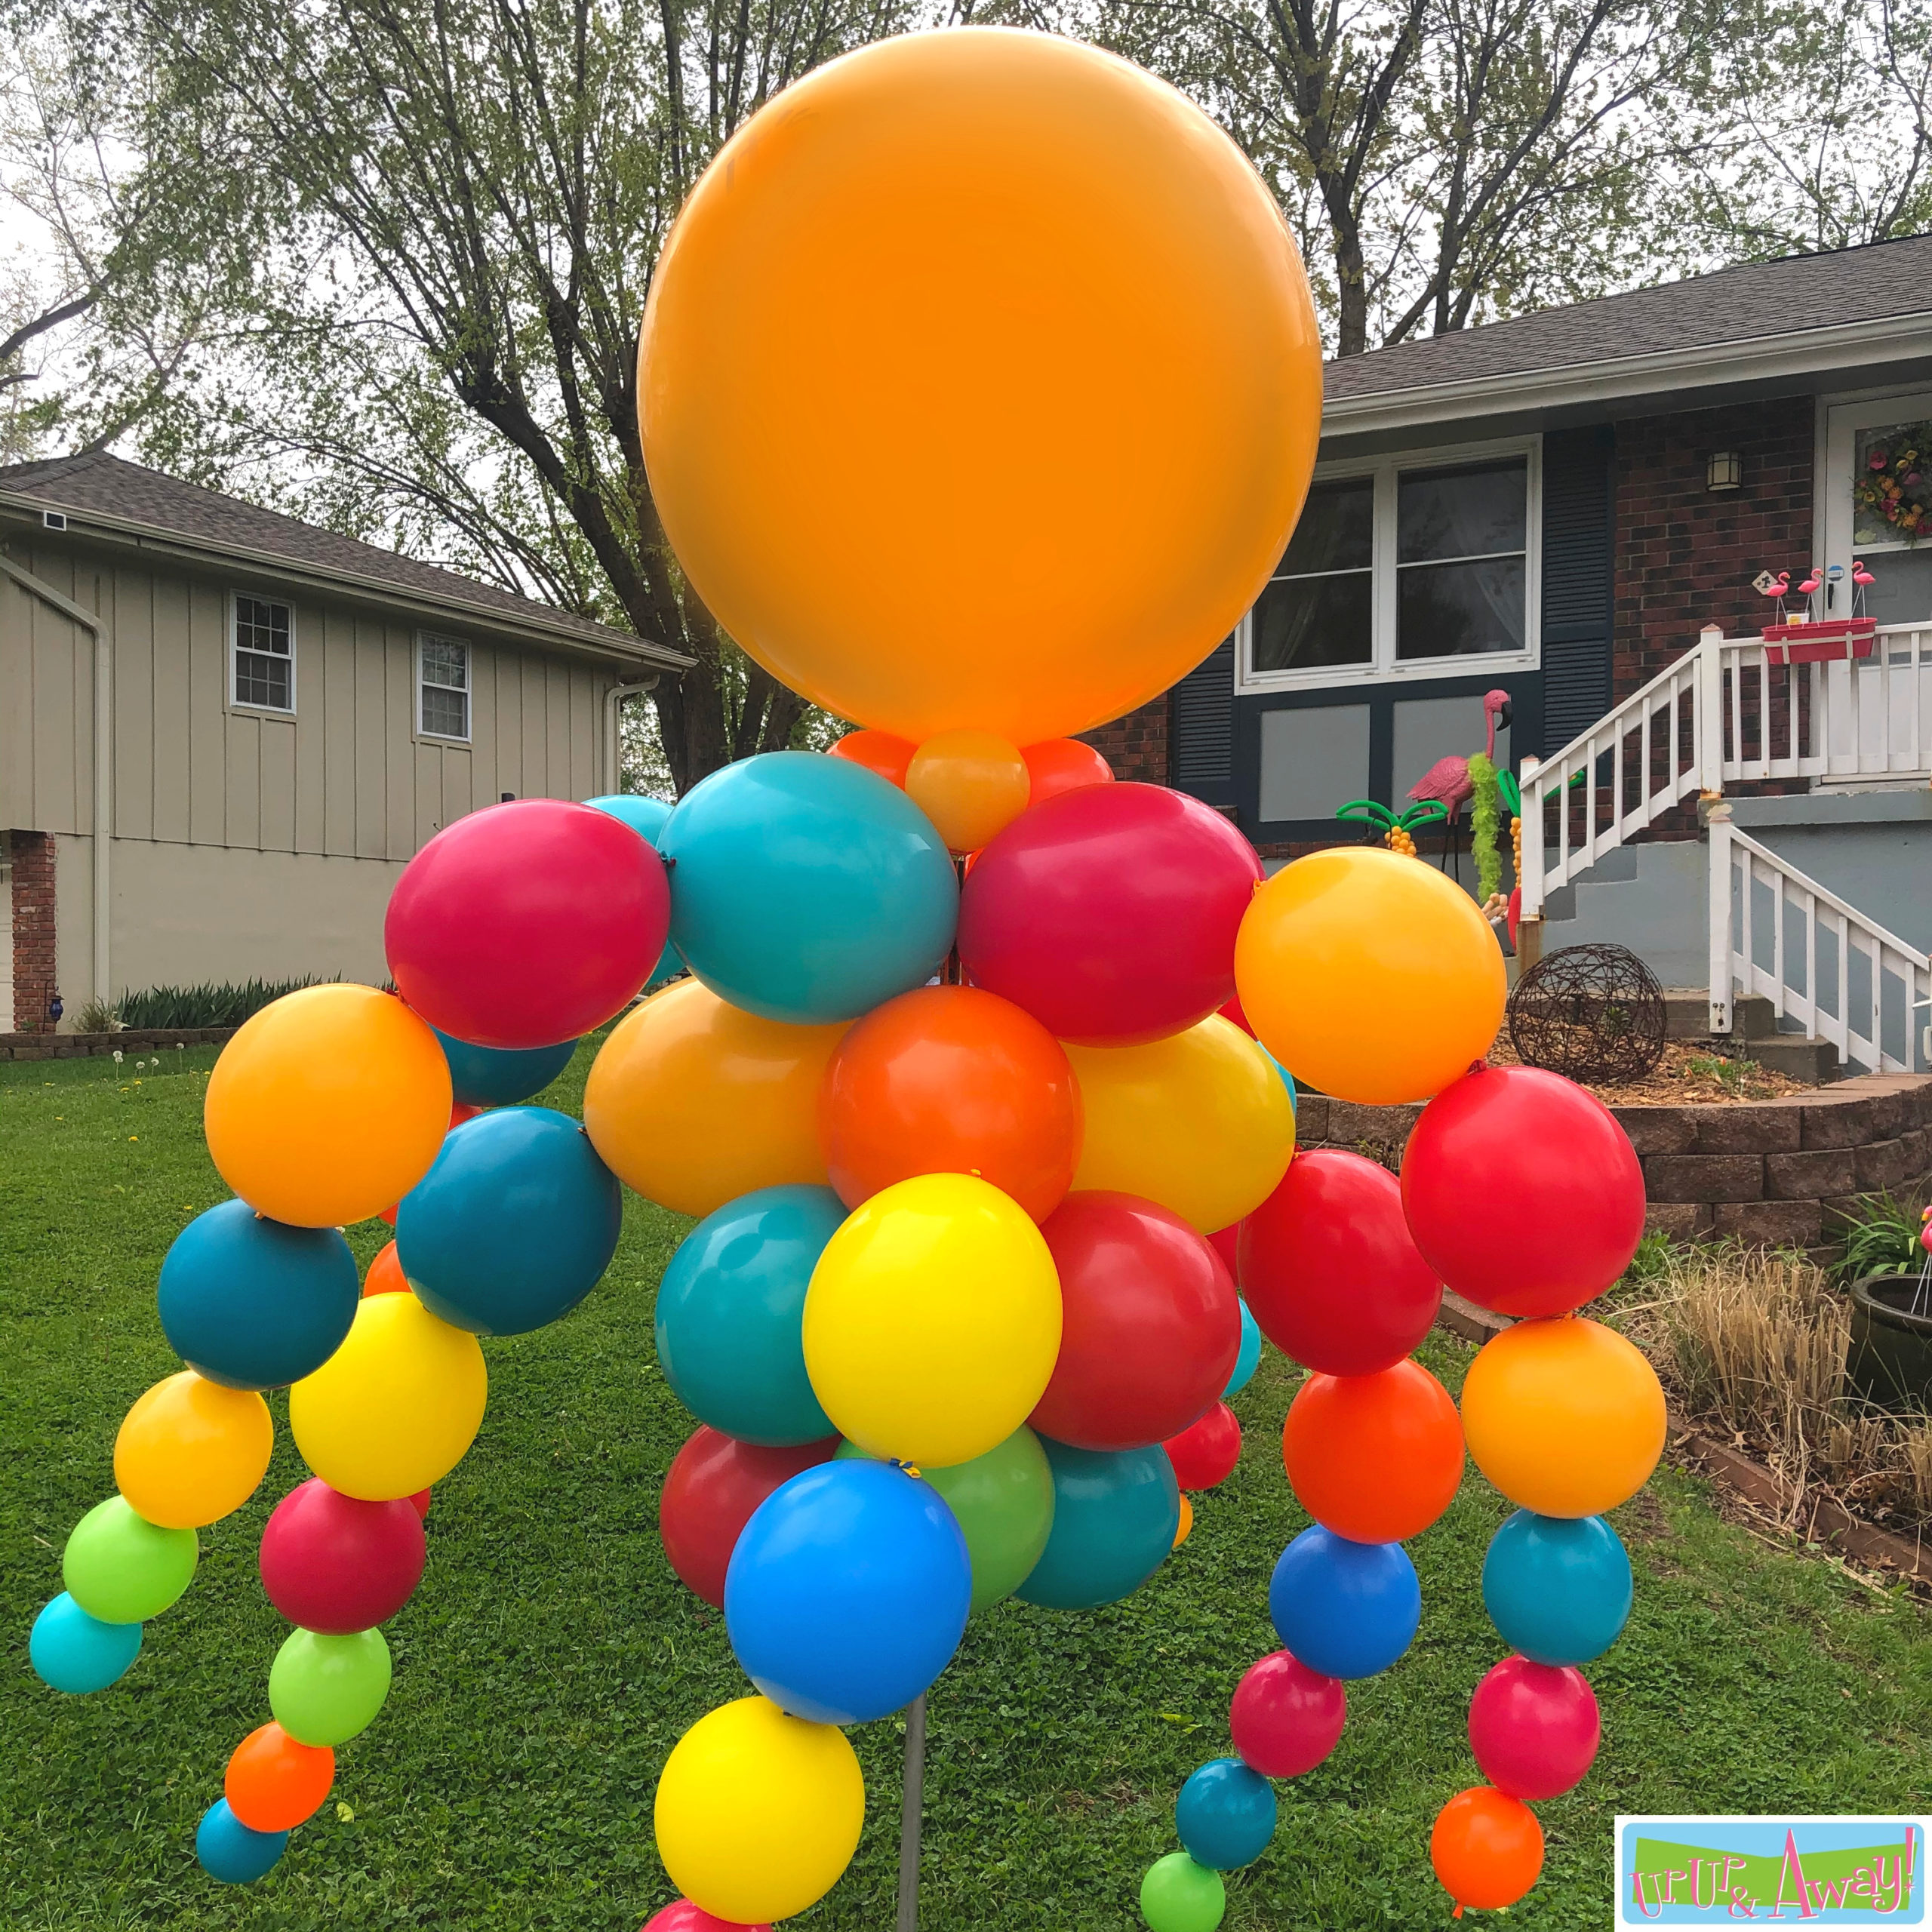 MegaWaver | Up, Up & Away! Balloons